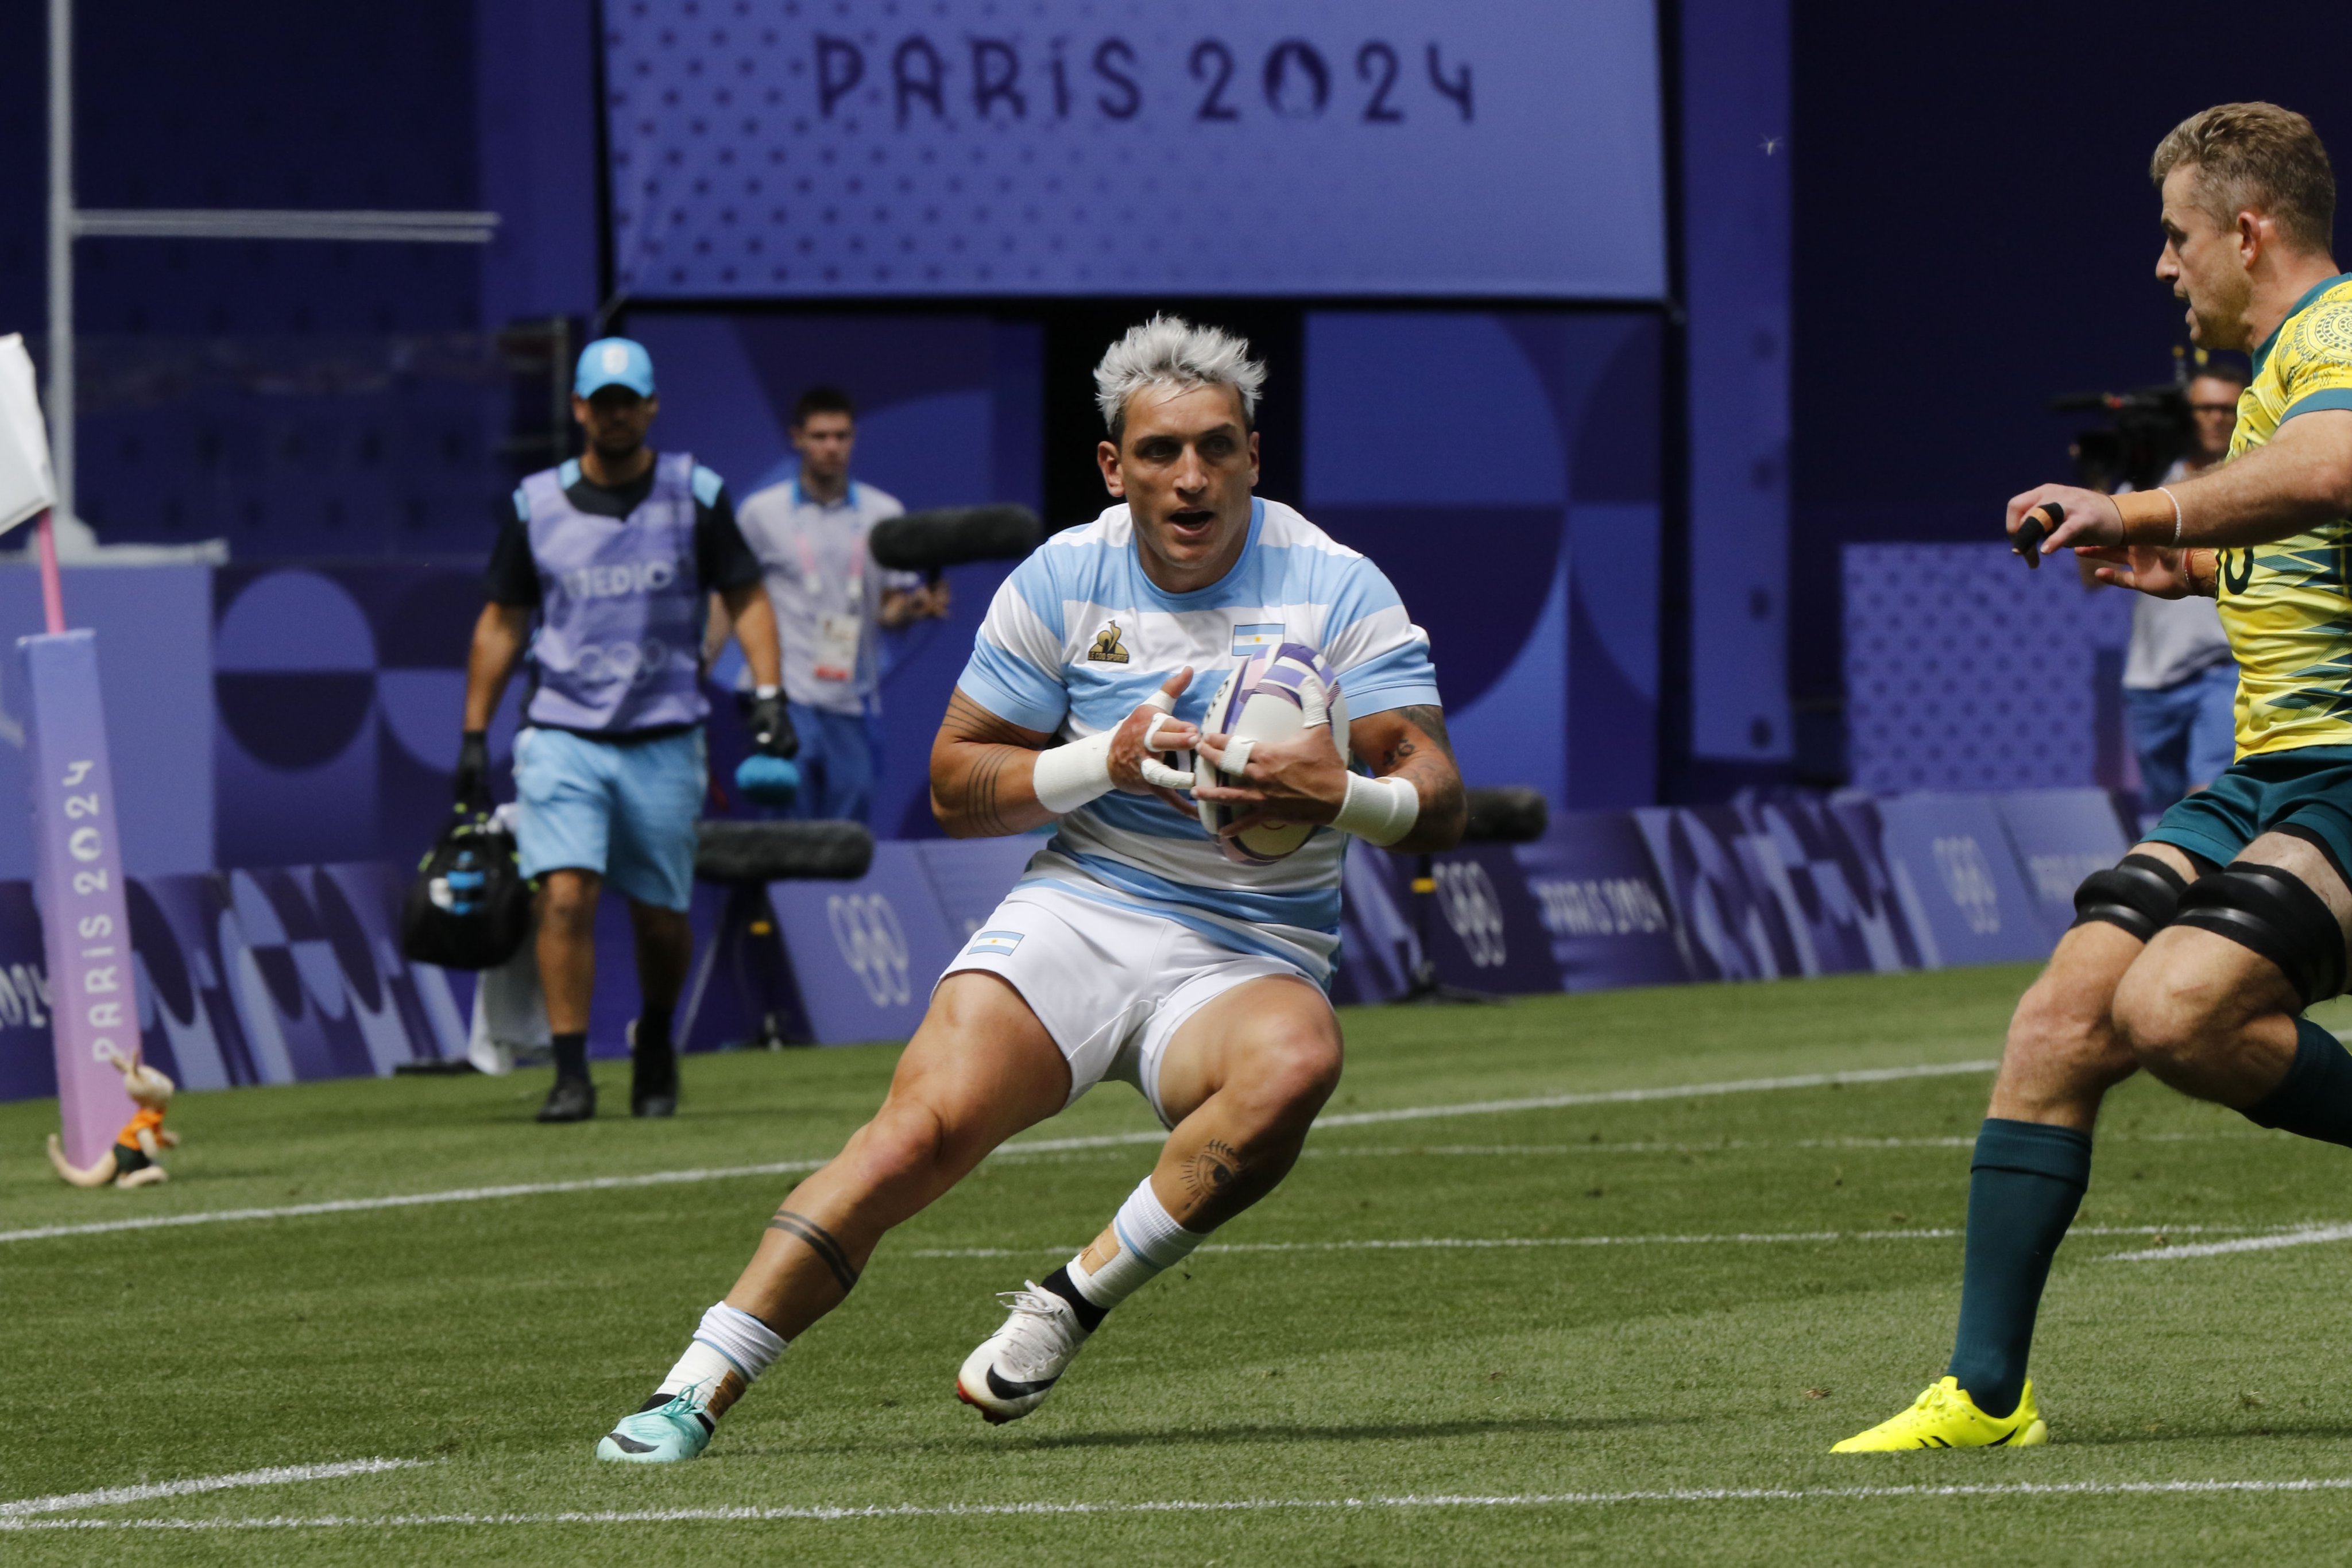 Los Pumas palpitan el picante cruce con Francia: “Parece que son todos anti Argentina”